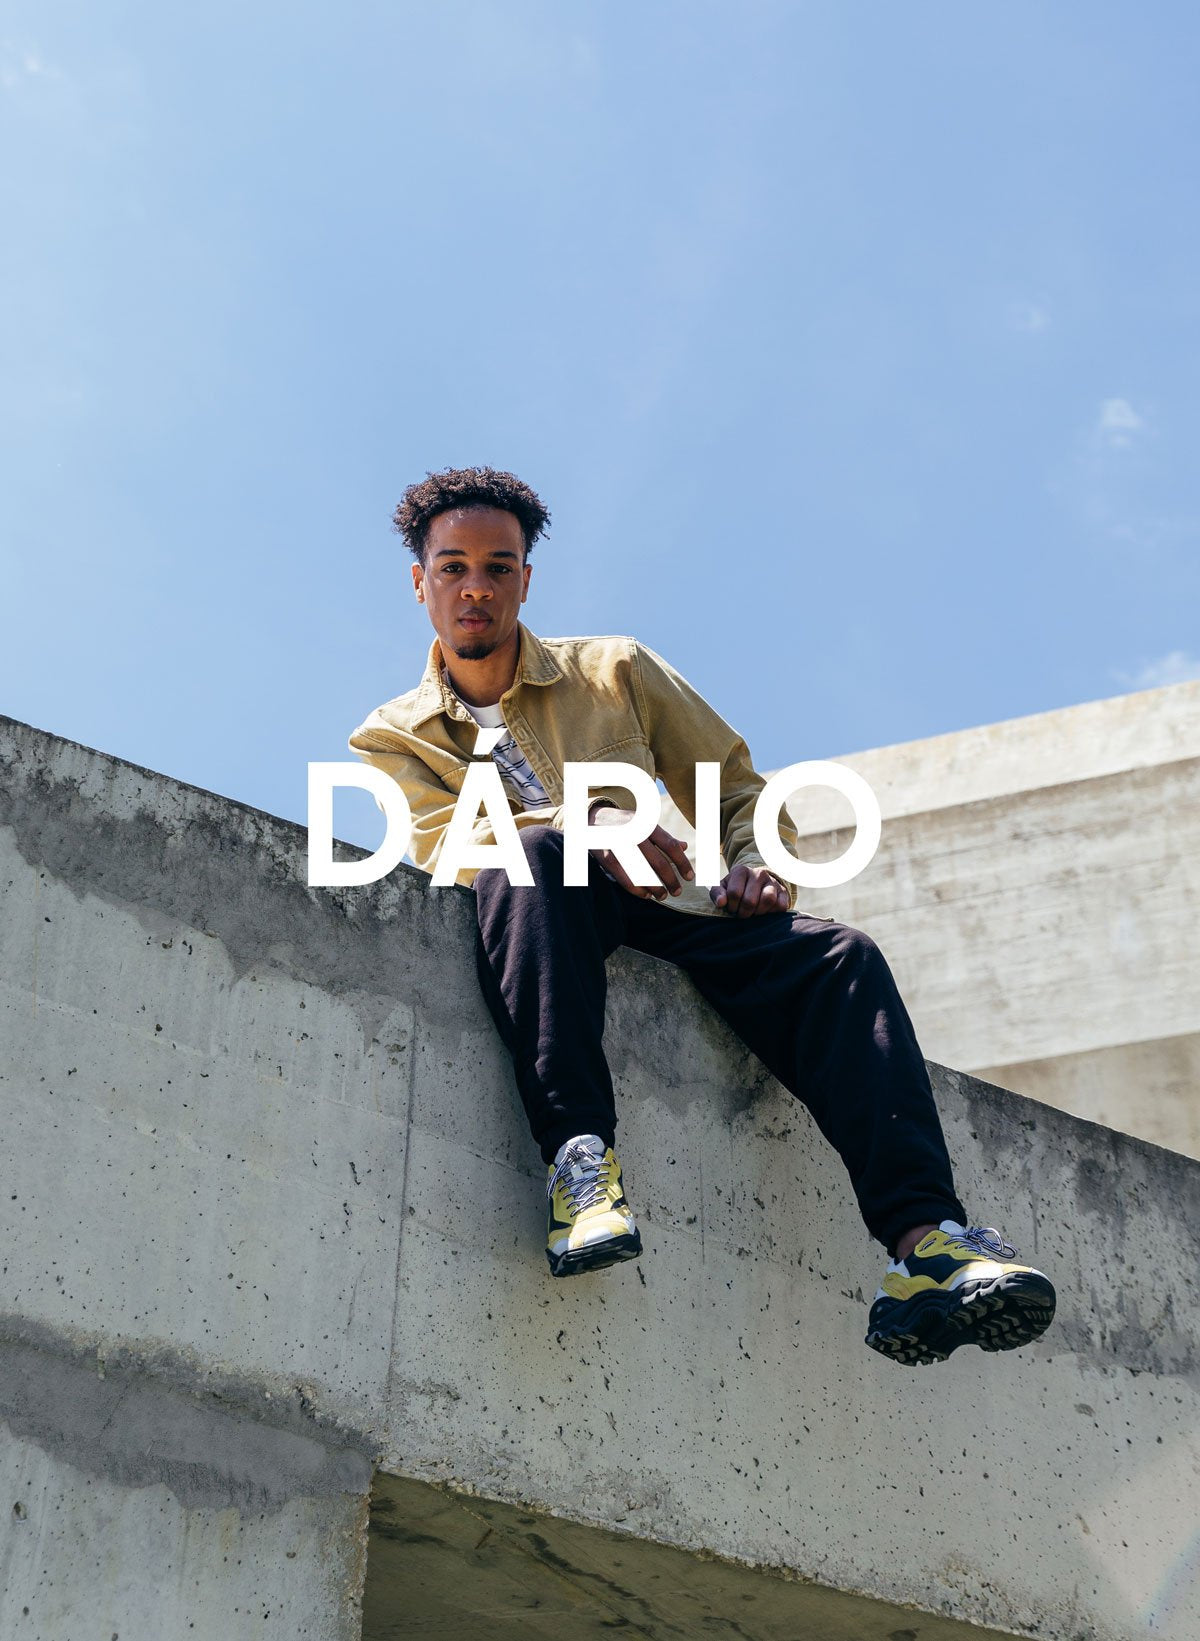 Dário Er sitzt an einer Wand und trägt Diverge sneakers, Förderung der sozialen Wirkung und maßgeschneiderte Schuhe im Rahmen des Imagine-Projekts.